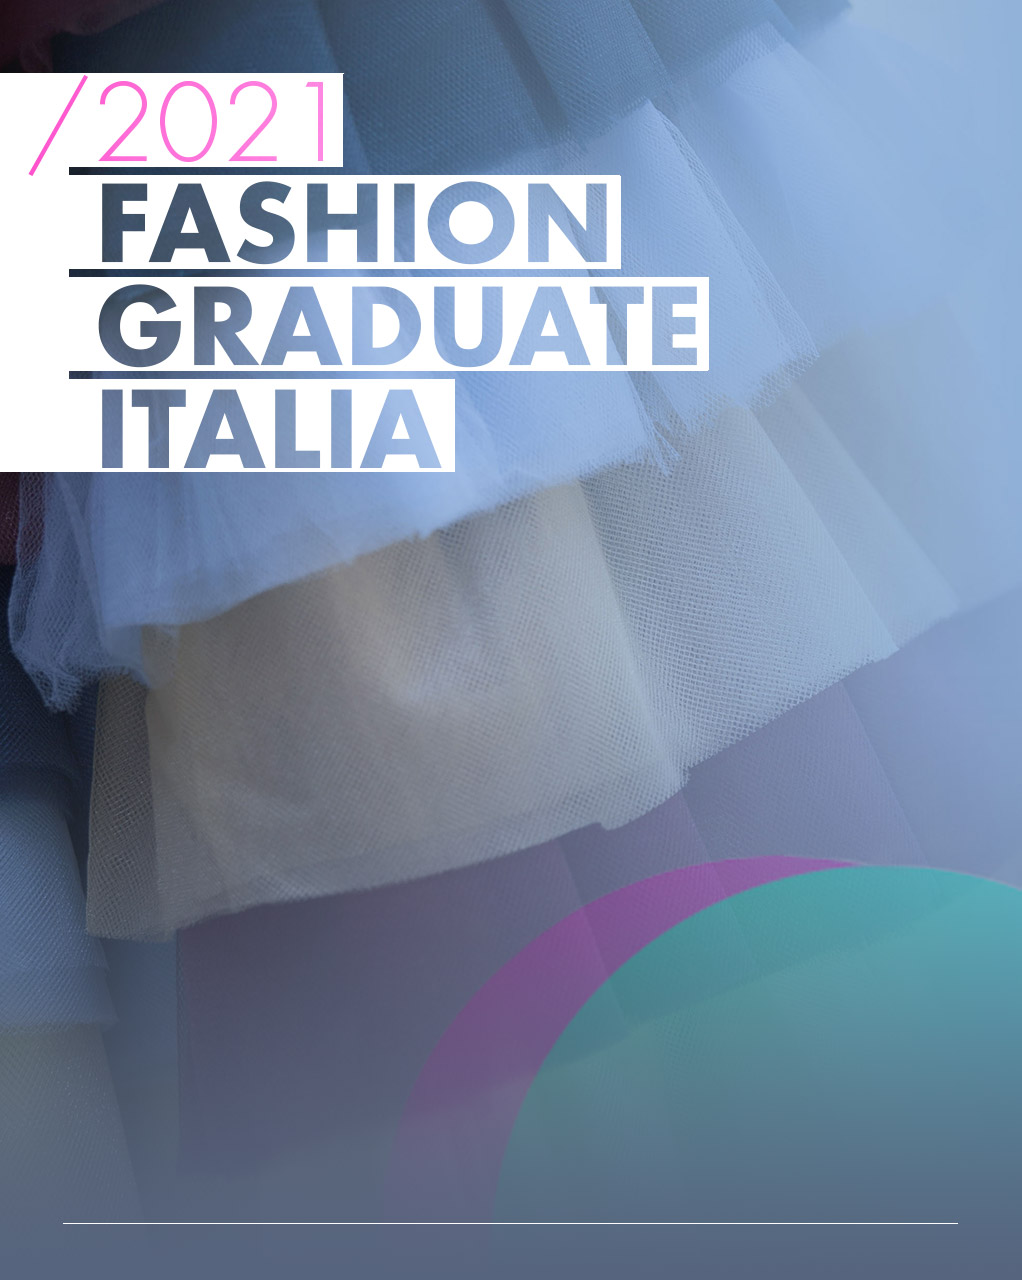 Immagini di tessuti di moda colorati con la dicitura Fashion Graduate Italia